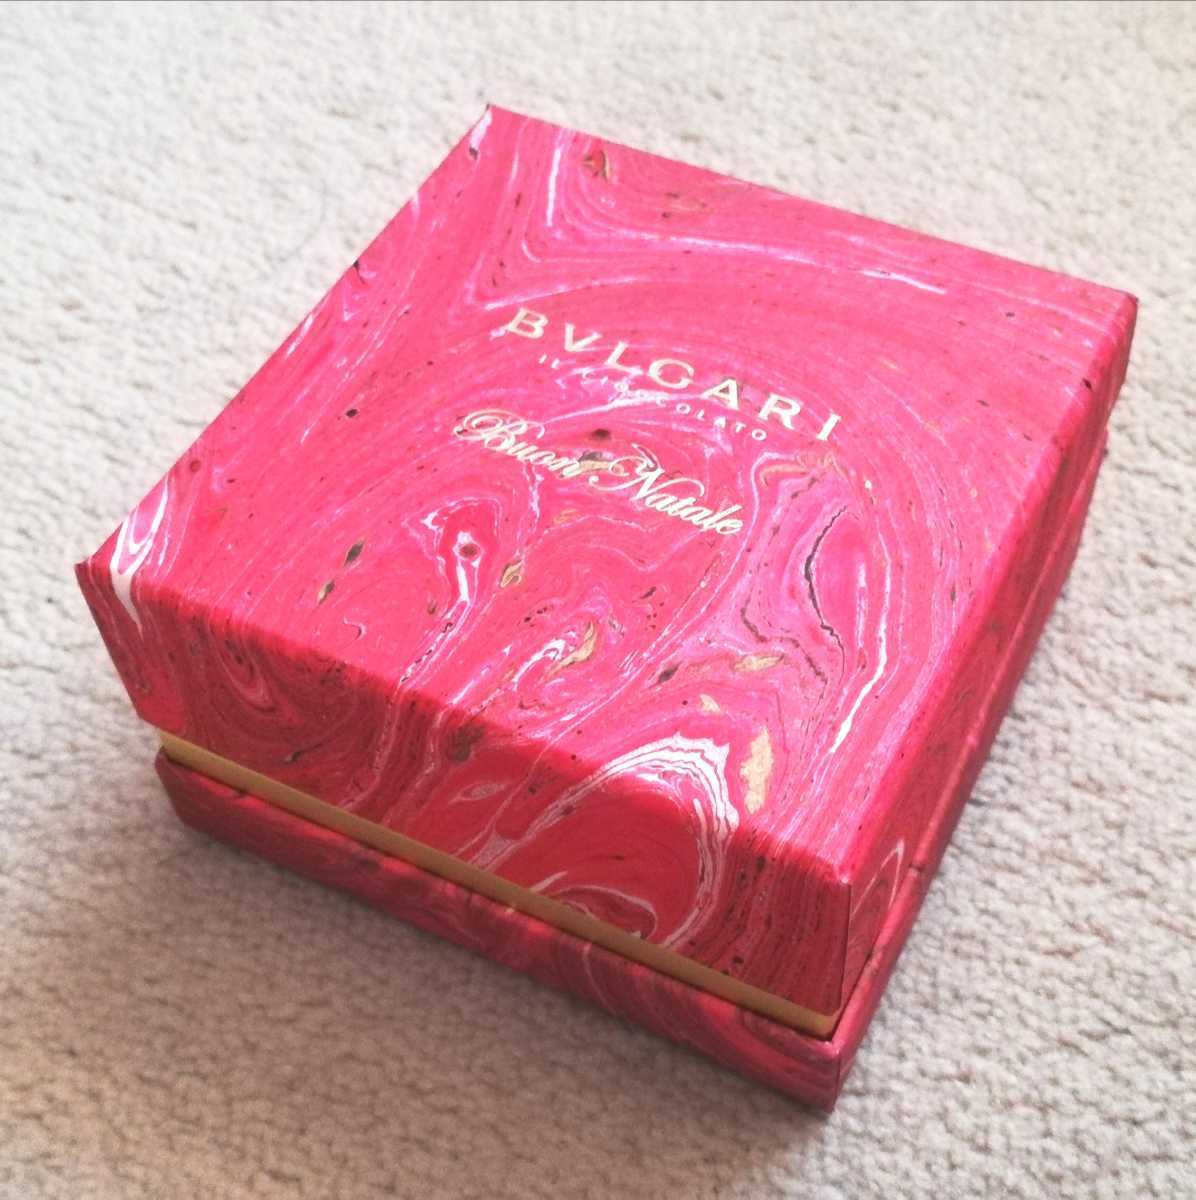 BVLGARI BVLGARY il шоко la-to коробка box шоколад Valentine 